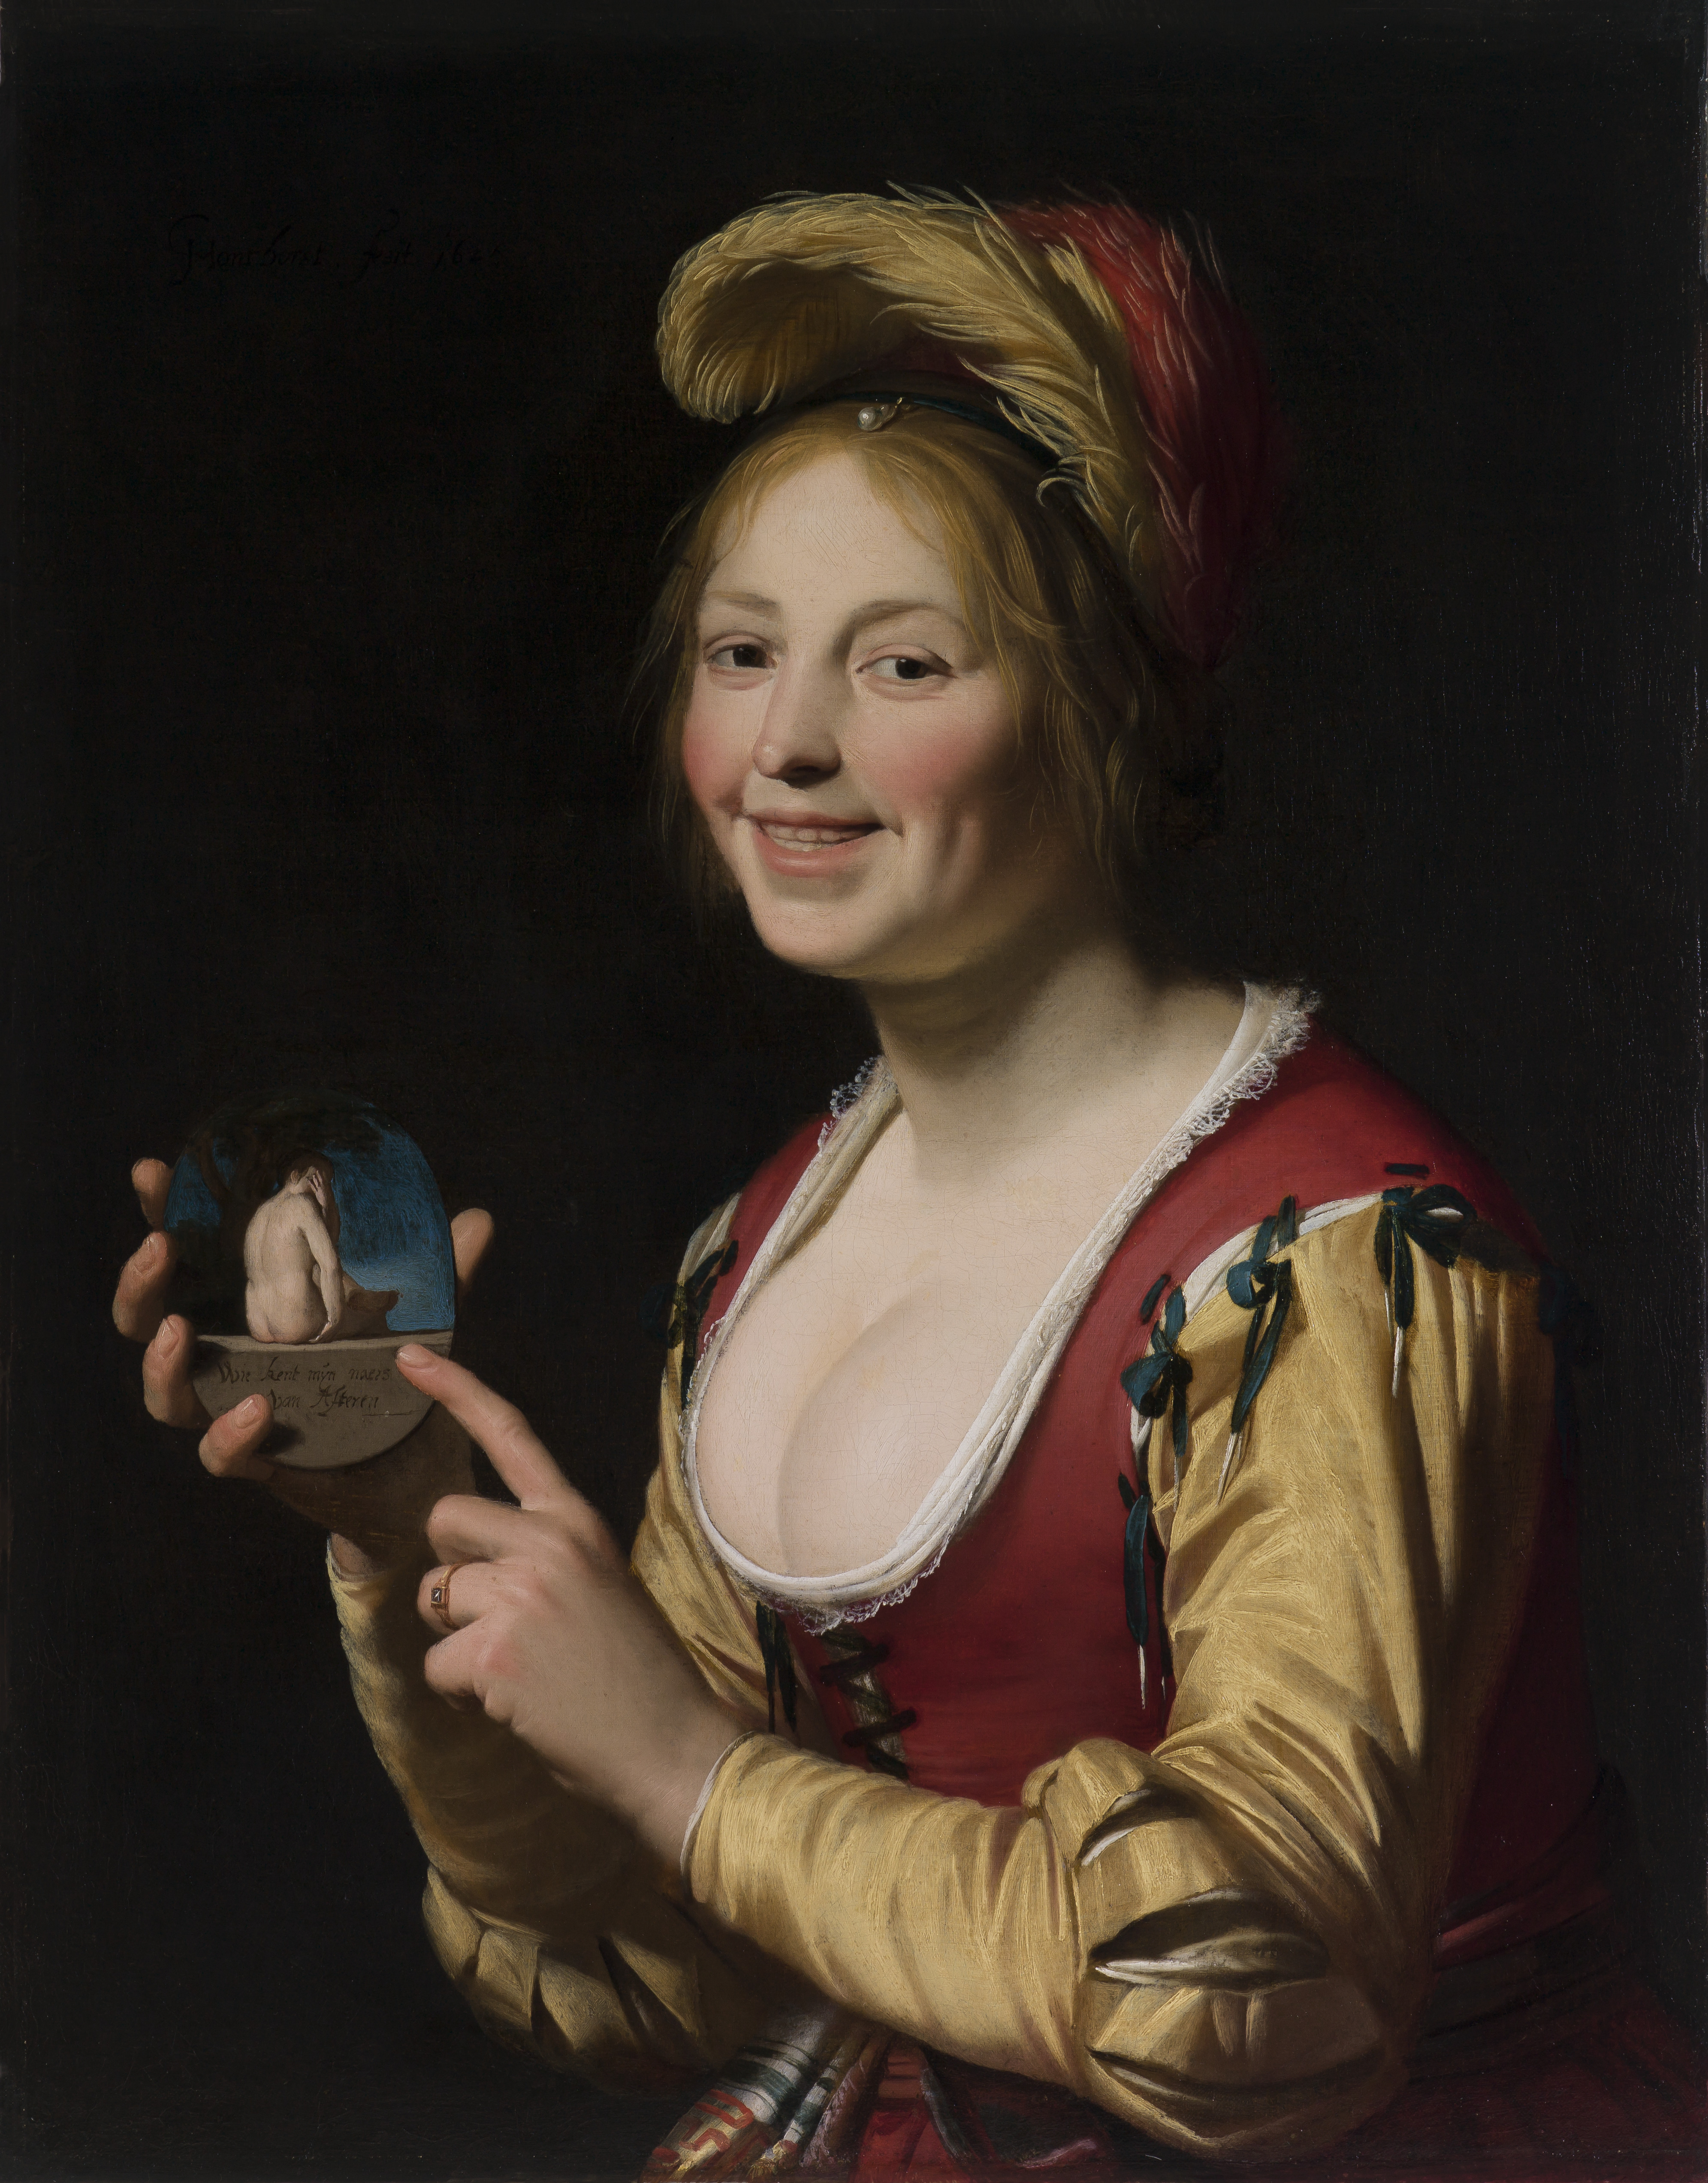 Fată zâmbitoare, o curtezană, ținând în mână o imagine obscenă by Gerard van Honthorst - 1625 - 81.3 x 64.1 cm 